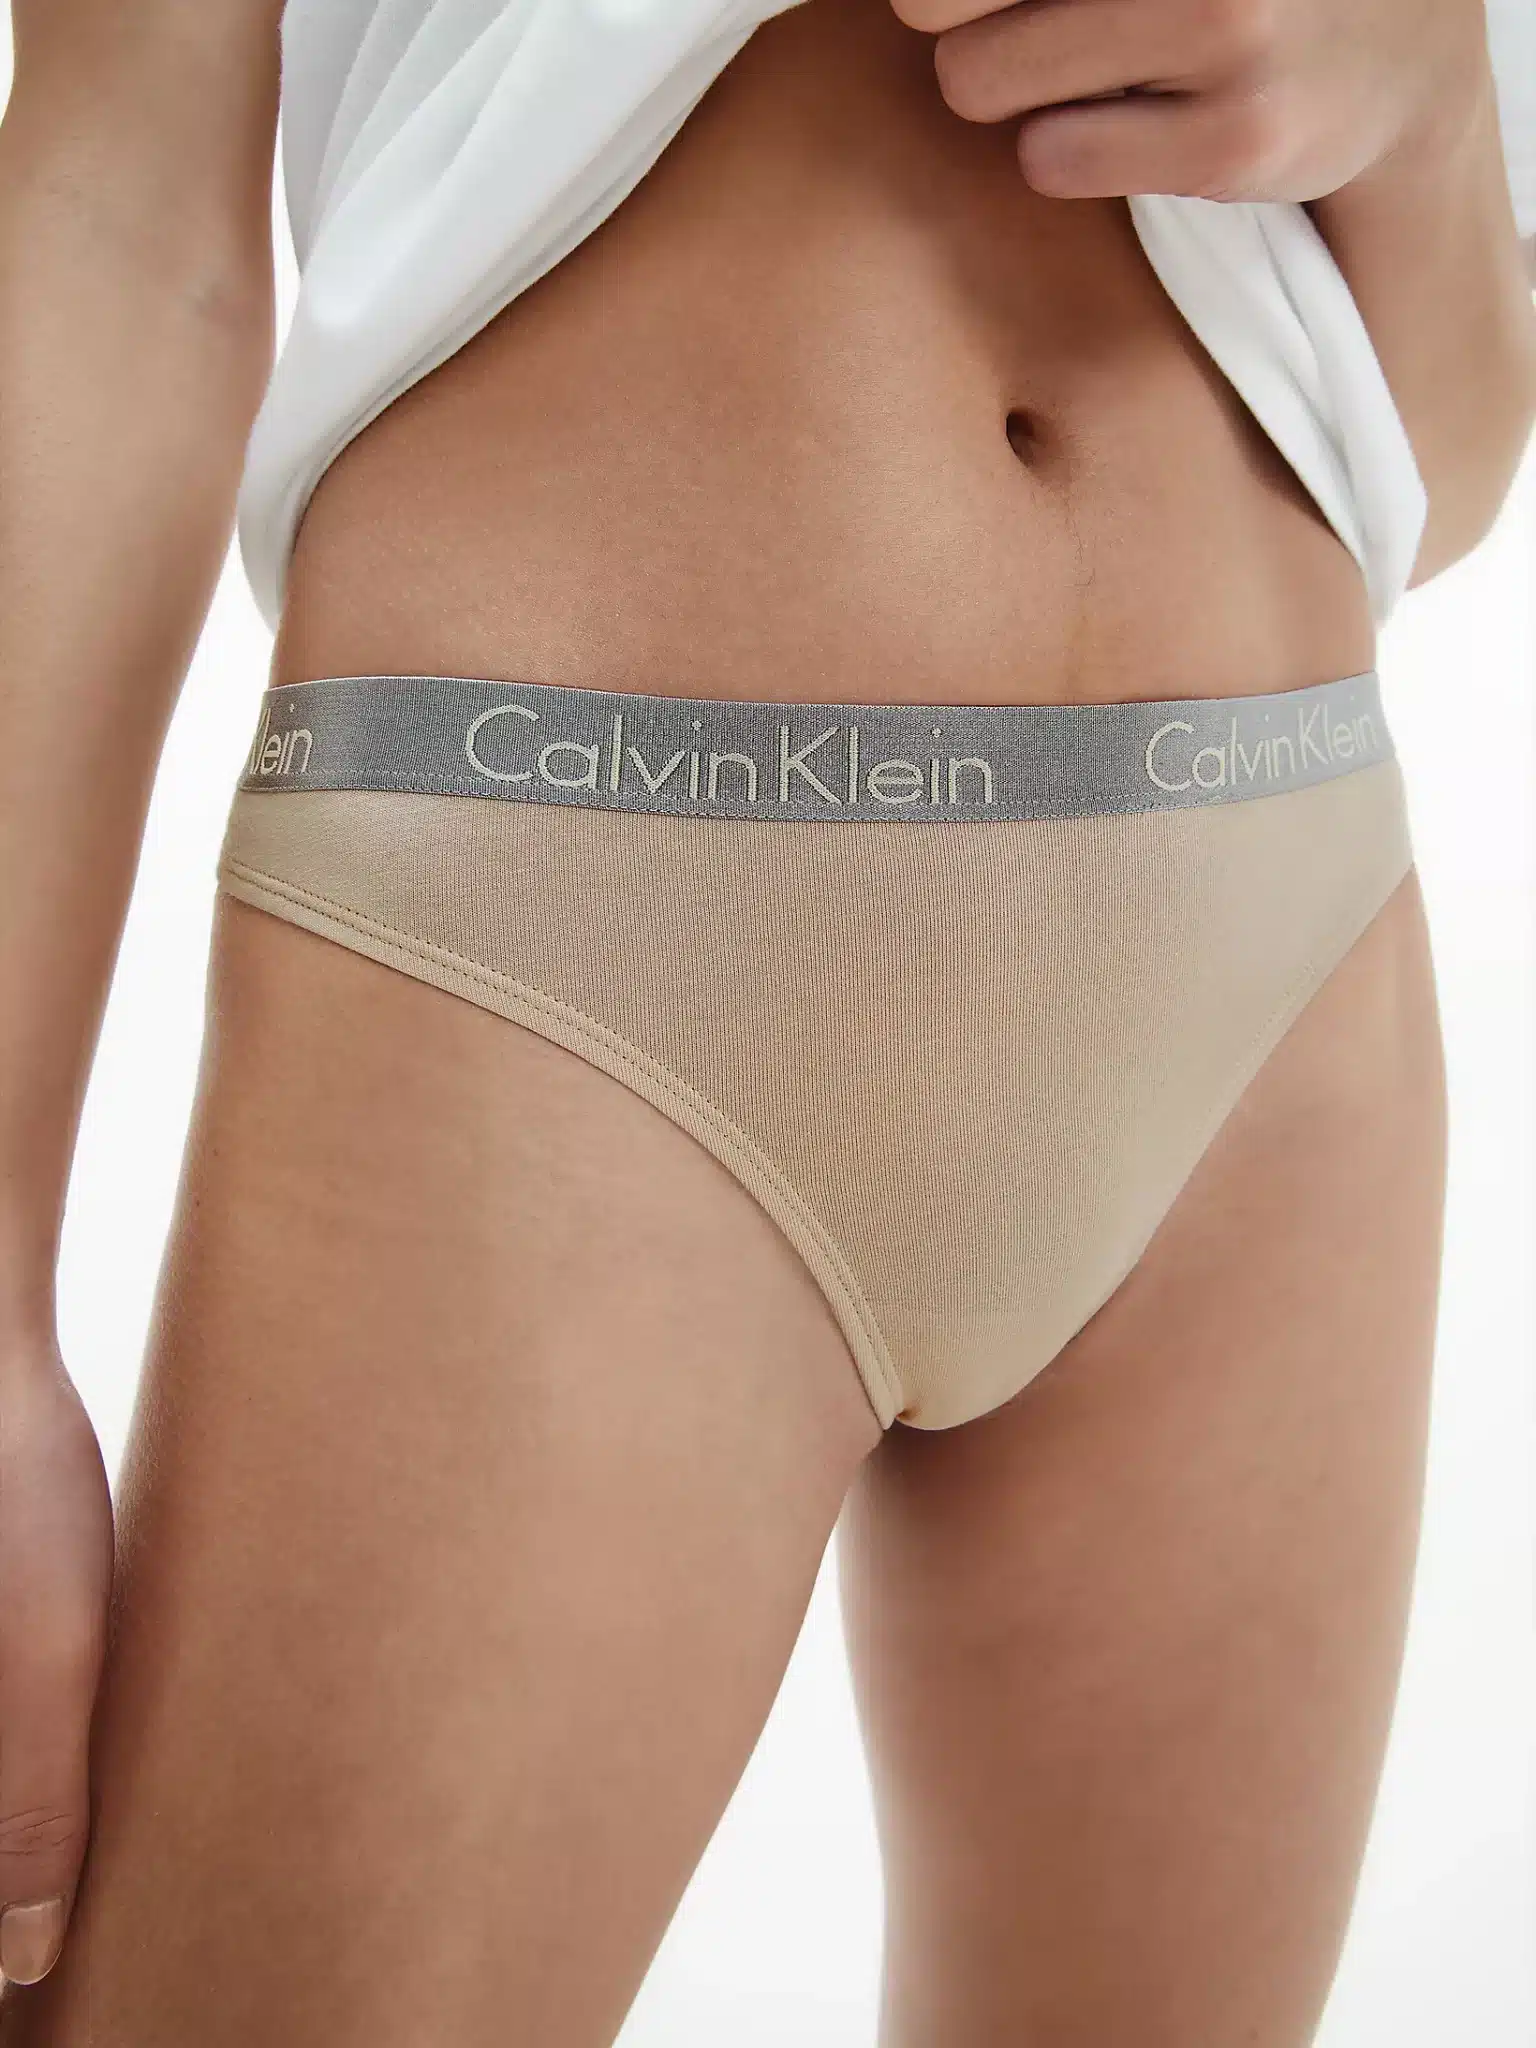 Buy Calvin Klein Radiant Cotton 3-Pack Thong Set - Scandinavian